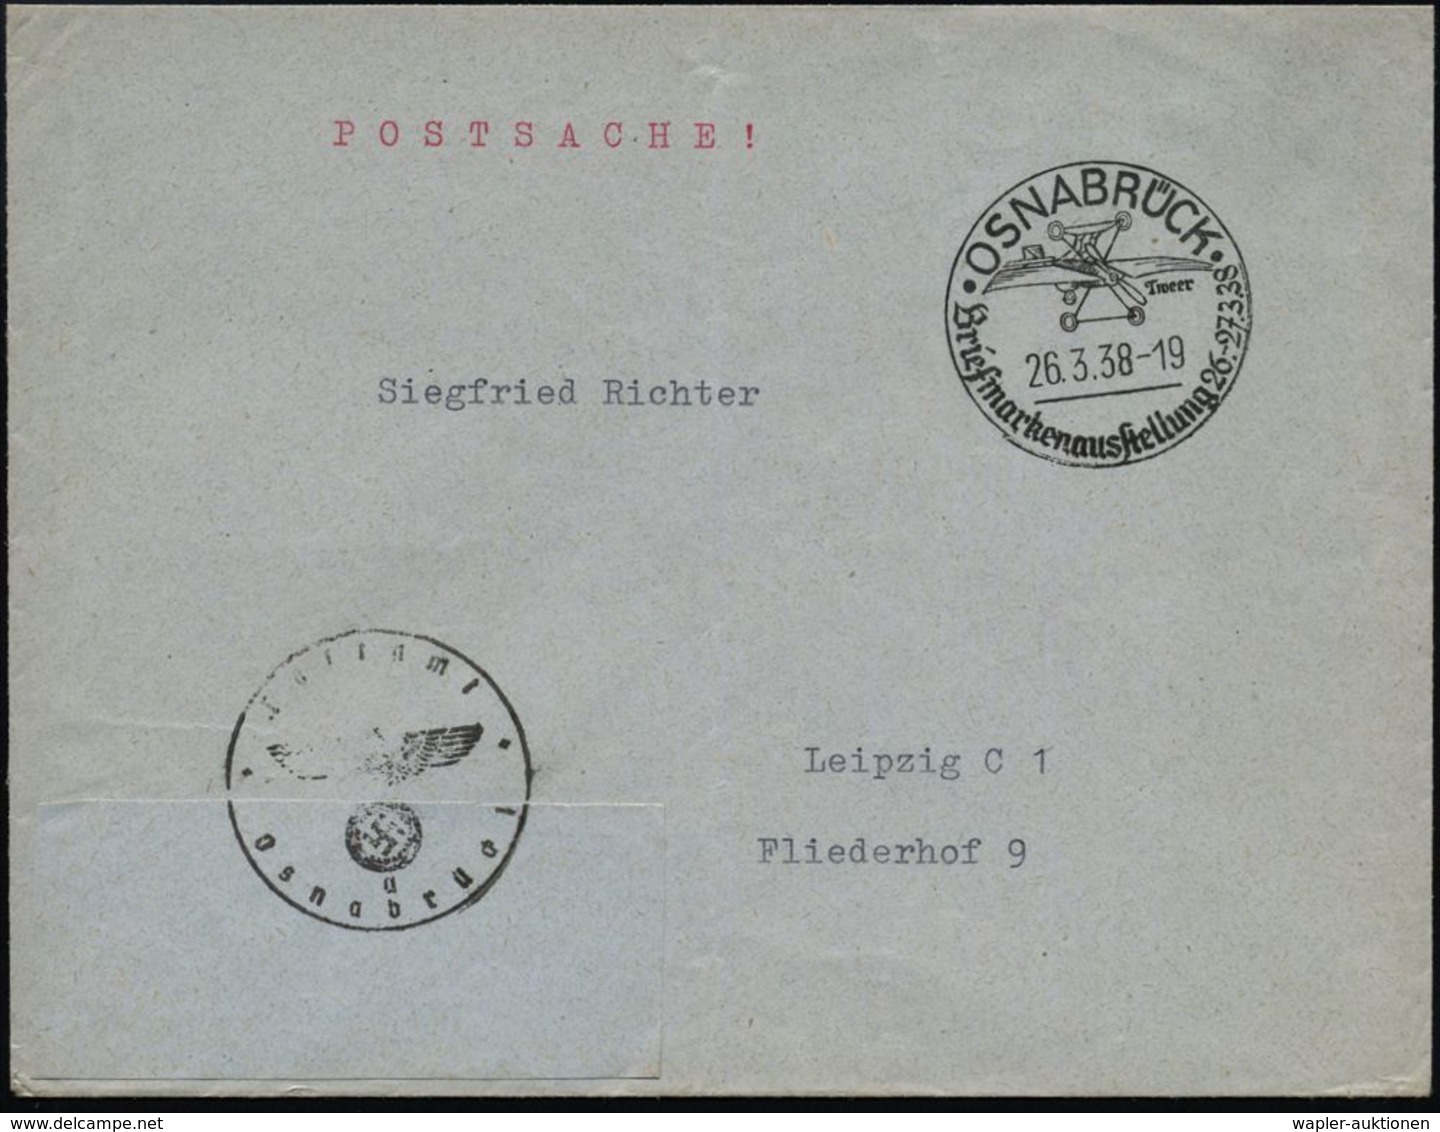 FLUGZEUGINDUSTRIE & -TYPEN : OSNABRÜCK/ Tweer/ Briefmarkenausstellung 1938 (26.3.) SSt = Pionier-Flugzeug "Tweer" + Schw - Airplanes